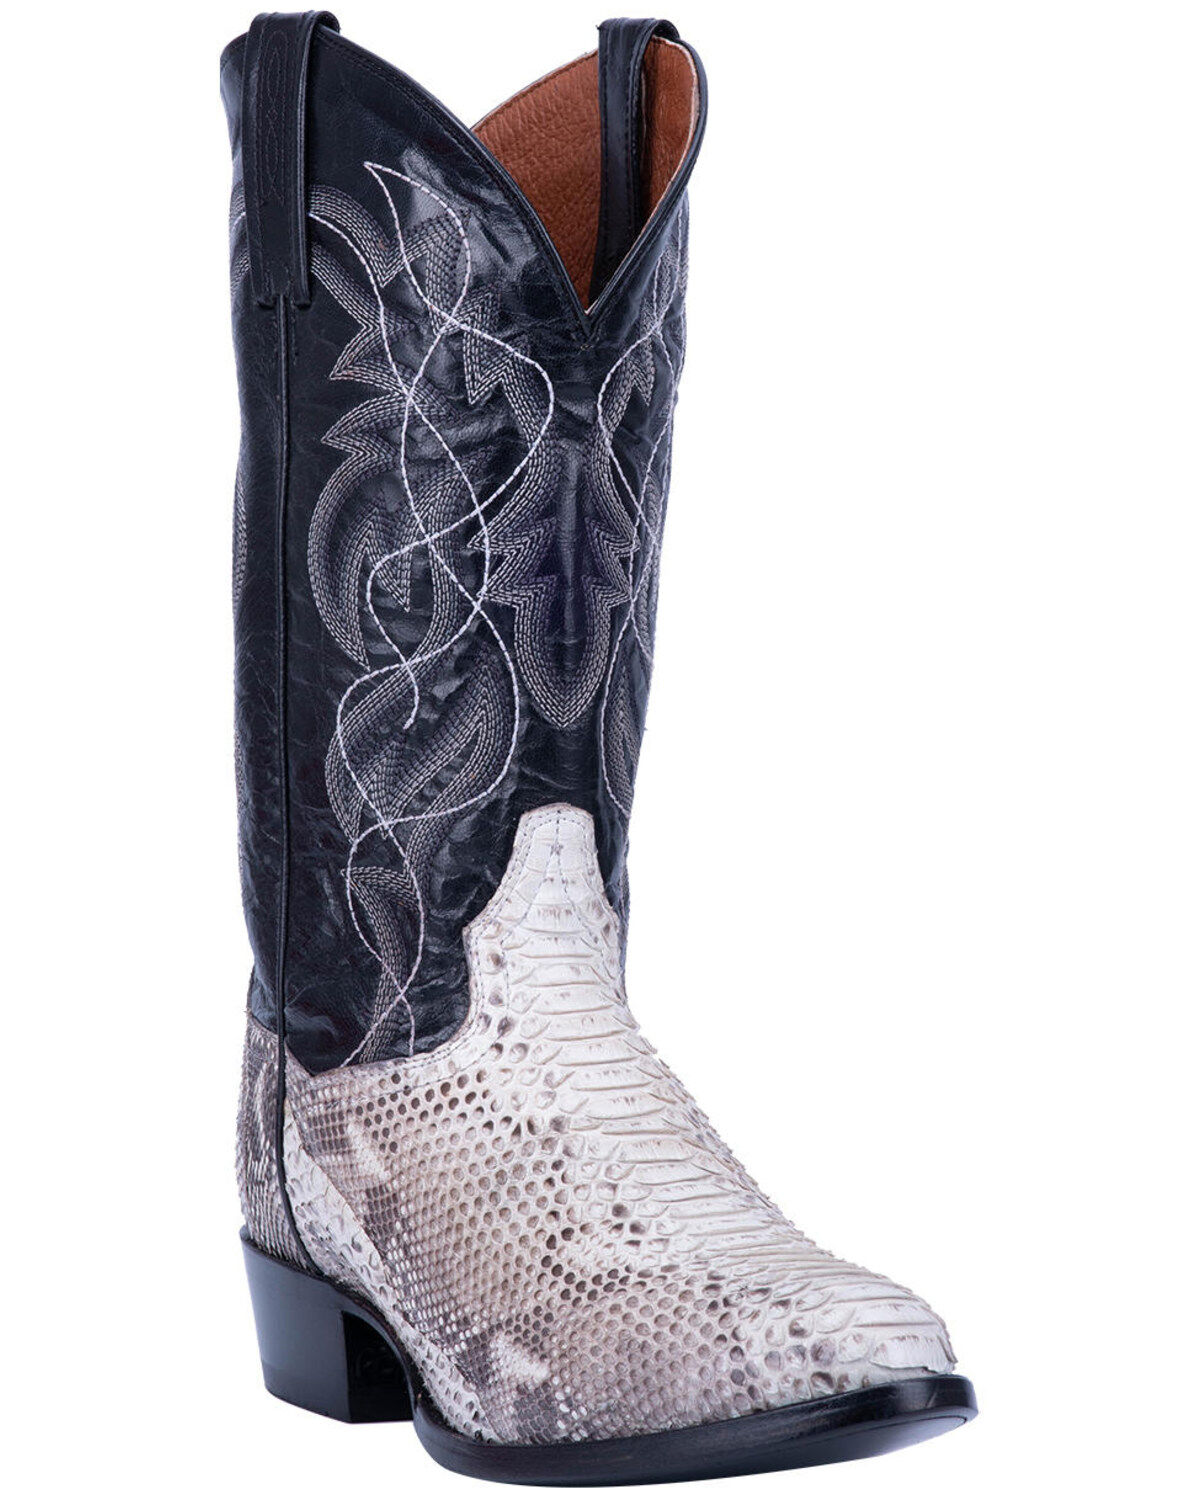 Team West Mens Cognac Python Snake Print Leather Cowboy Boots 12.5 E US